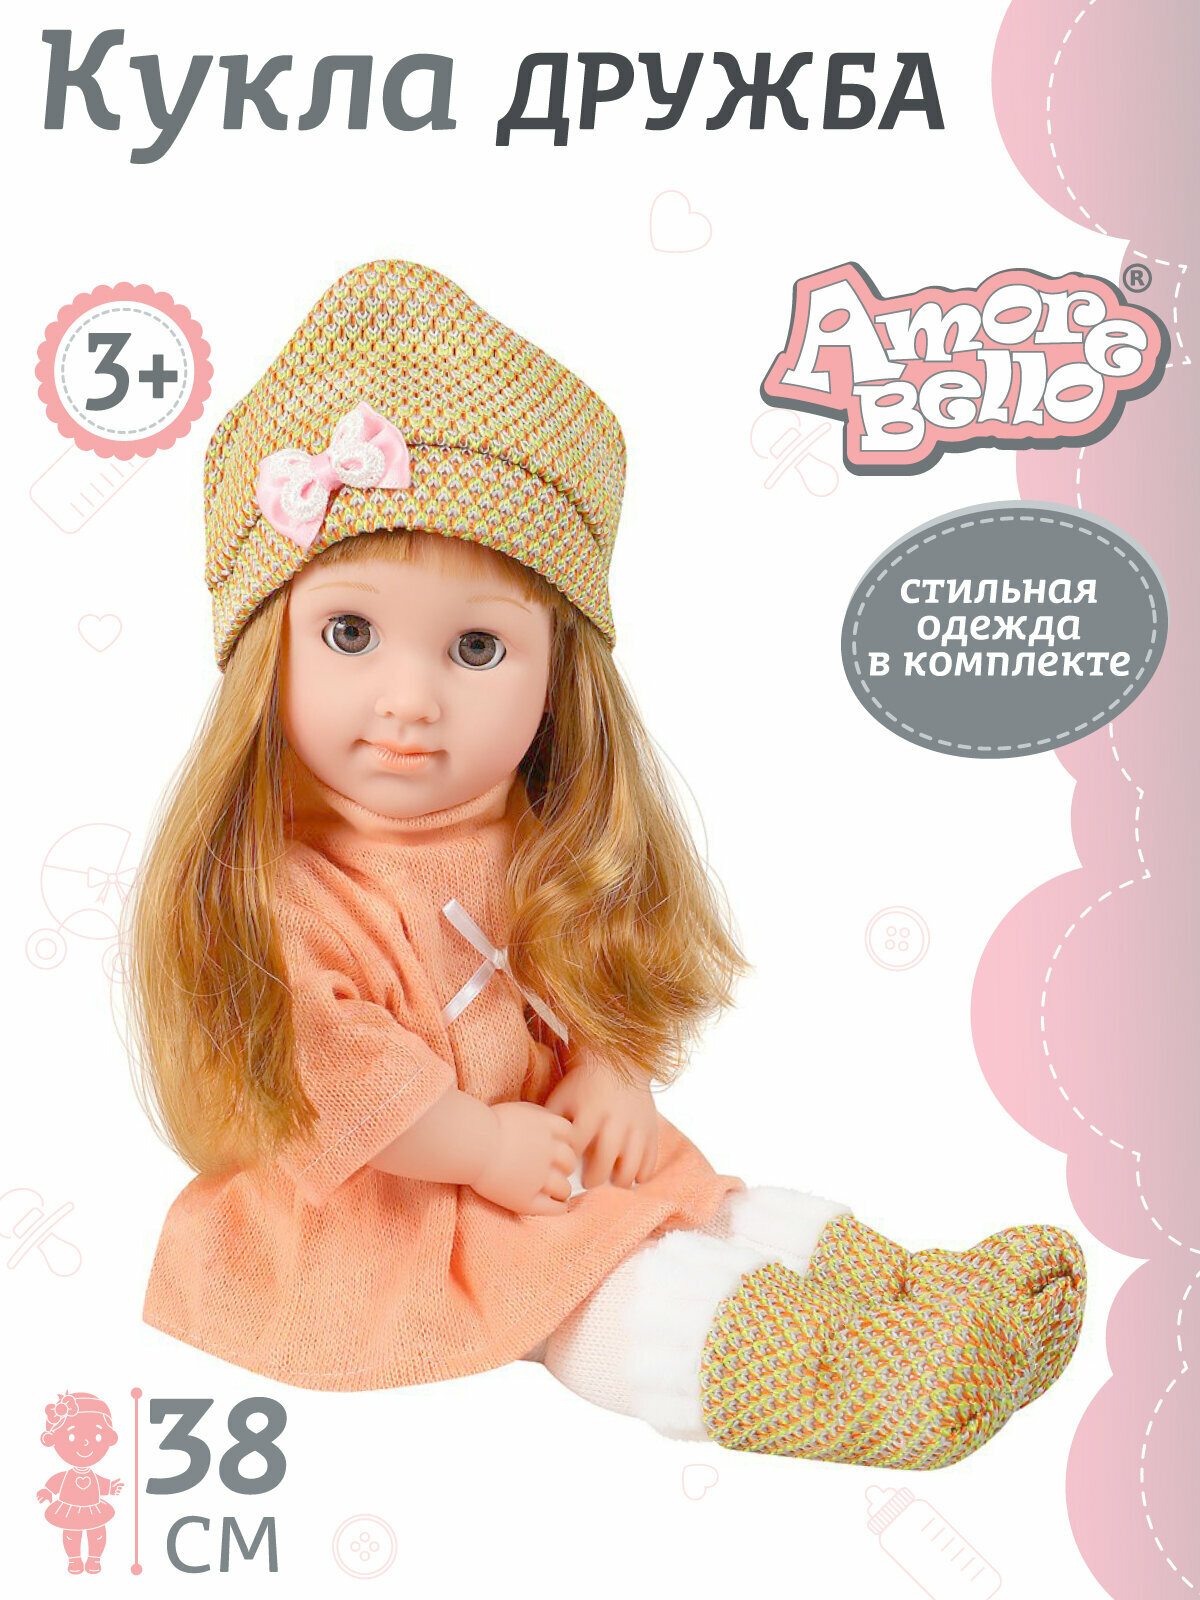 Кукла серии "Дружба" ТМ "Amore Bello", 38 см, длинные волосы, красивая одежда, игра в дочки- матери, подарочная упаковка, JB0208840УЦ